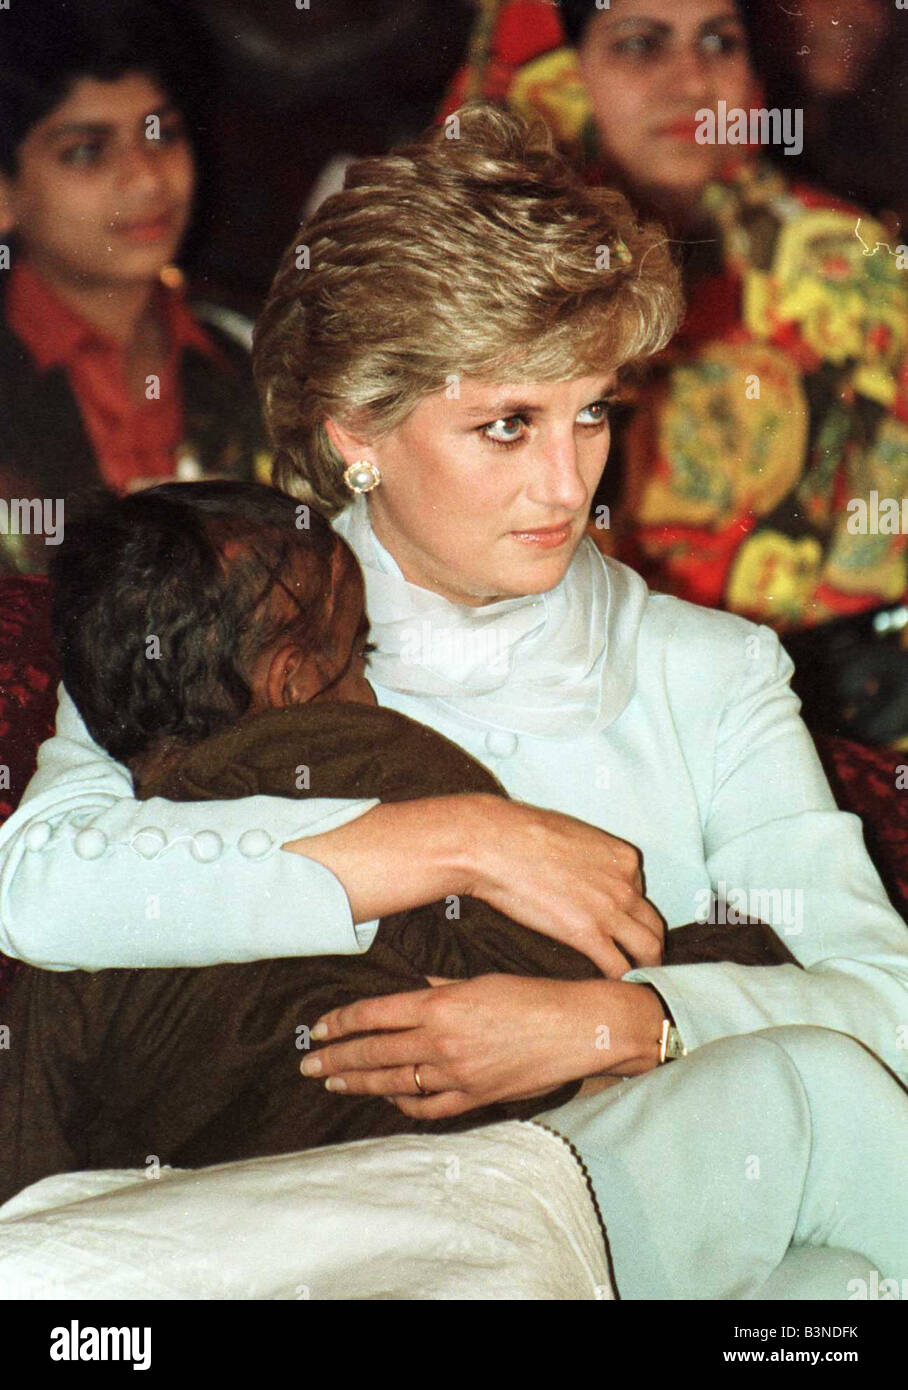 Médico recuerda el emotivo momento cuando la princesa Diana abrazó a un niño  con SIDA